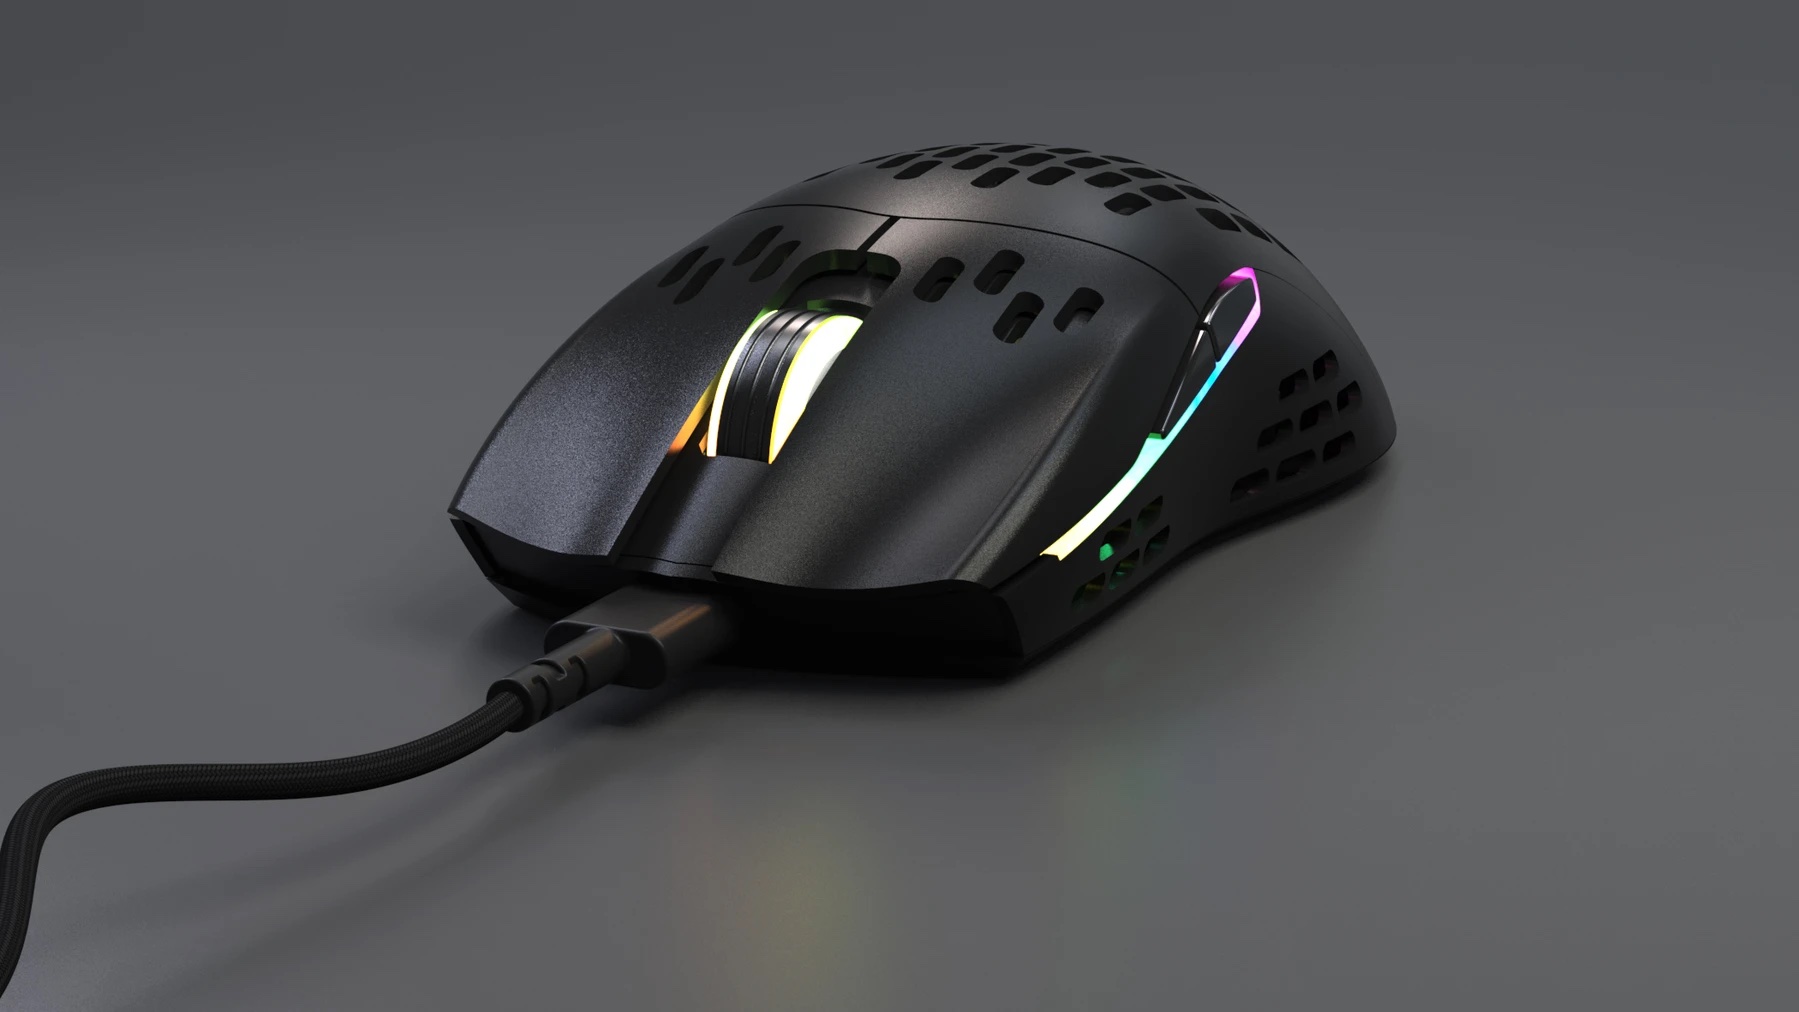 Keychron M1 Mouse Black